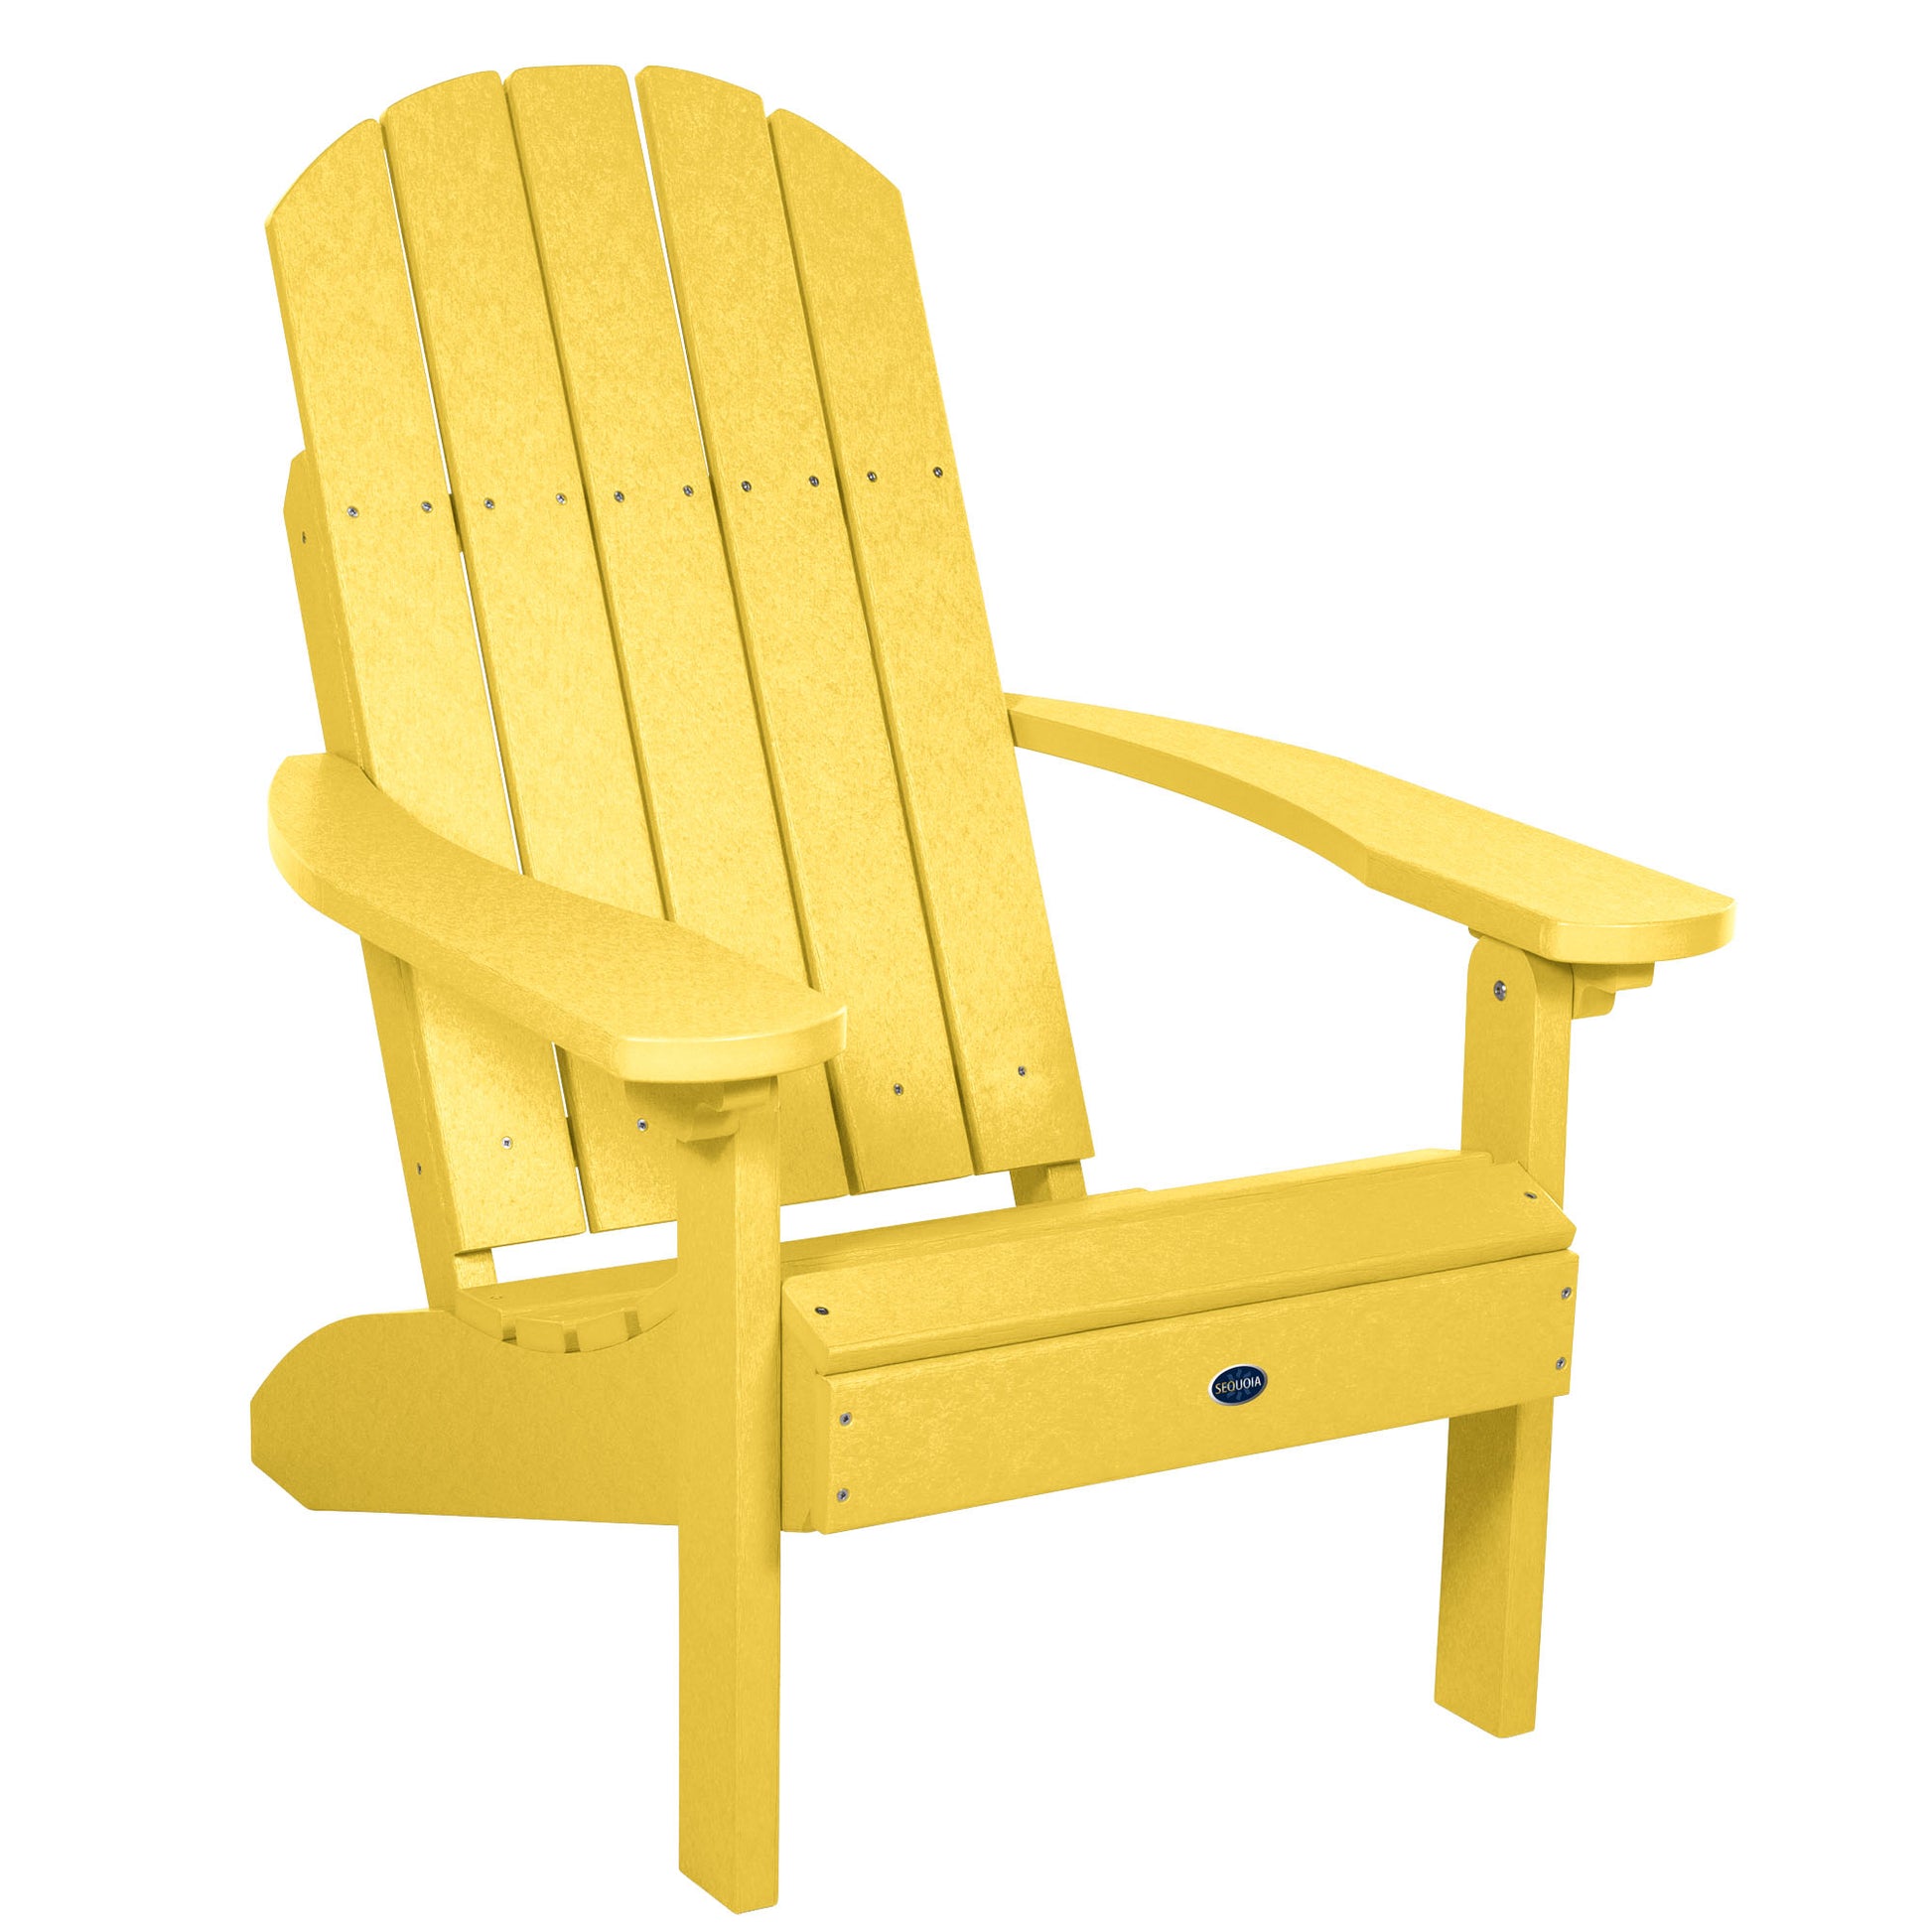 Sunrise Coast classic Adirondack chair in Sunbeam Yellow